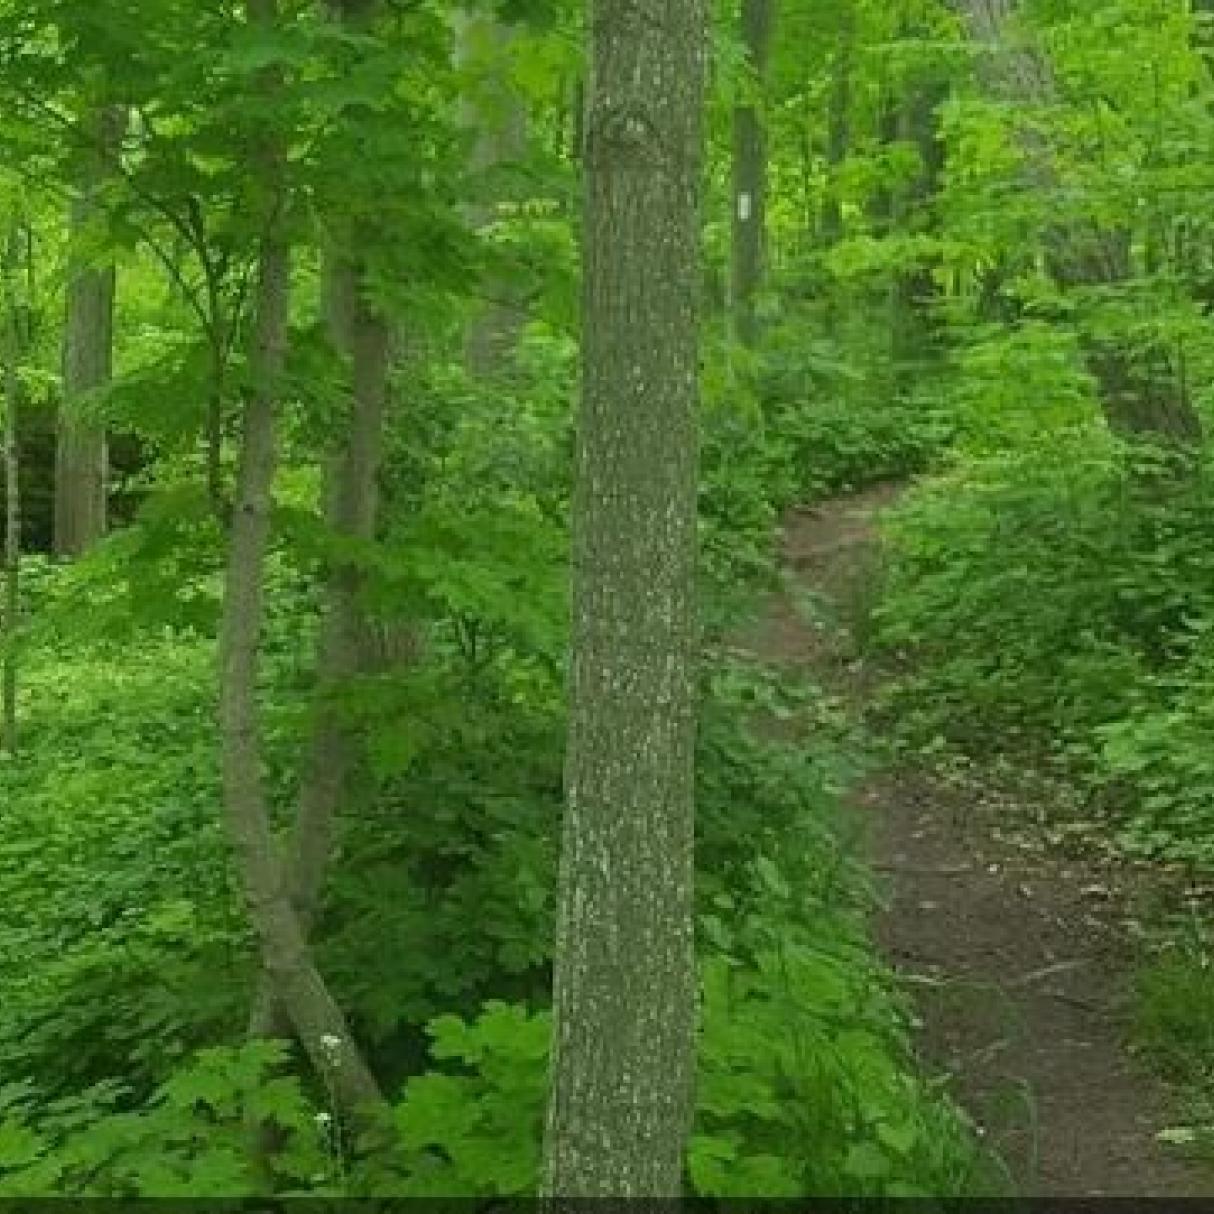 A trail through a lush green forest